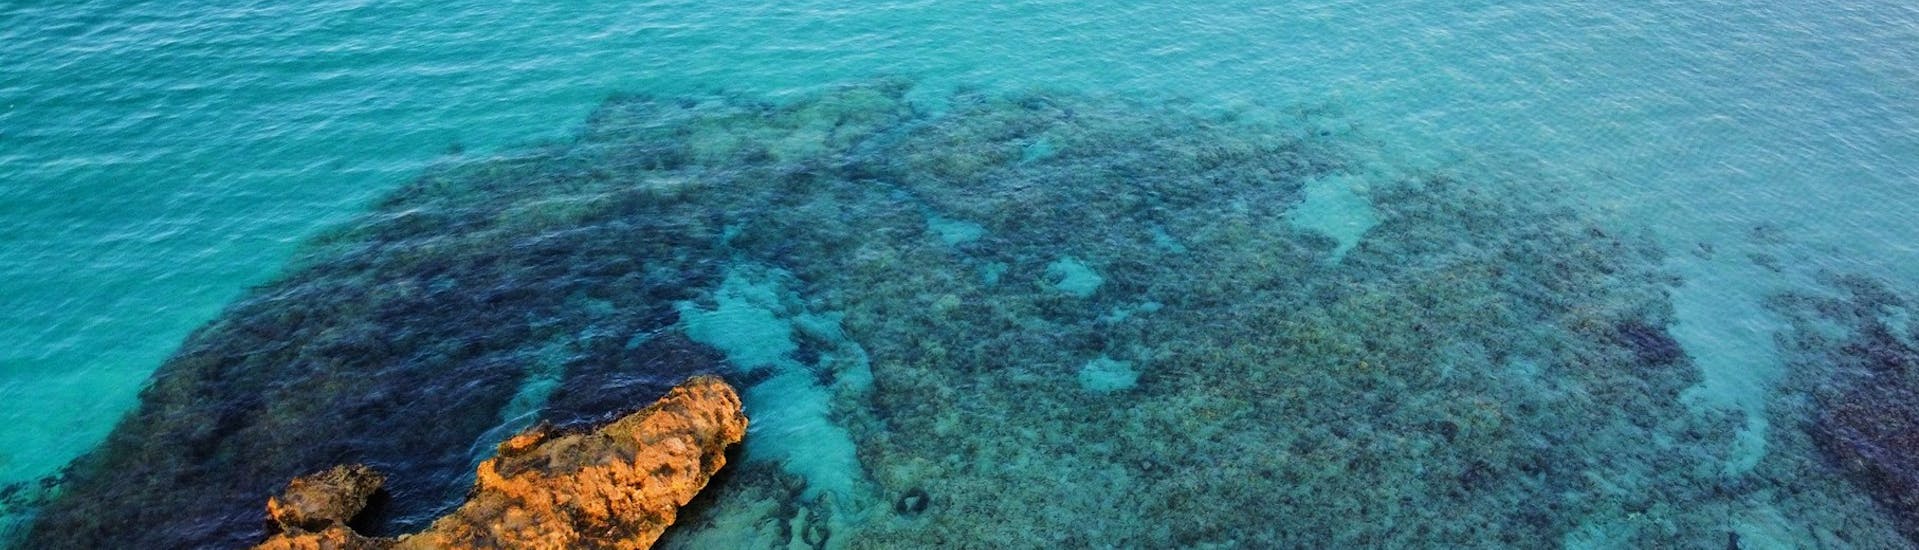 Spiaggia del litorale pugliese durante un noleggio barca a Otranto fino a massimo 8 persone con Gluglù Salento.